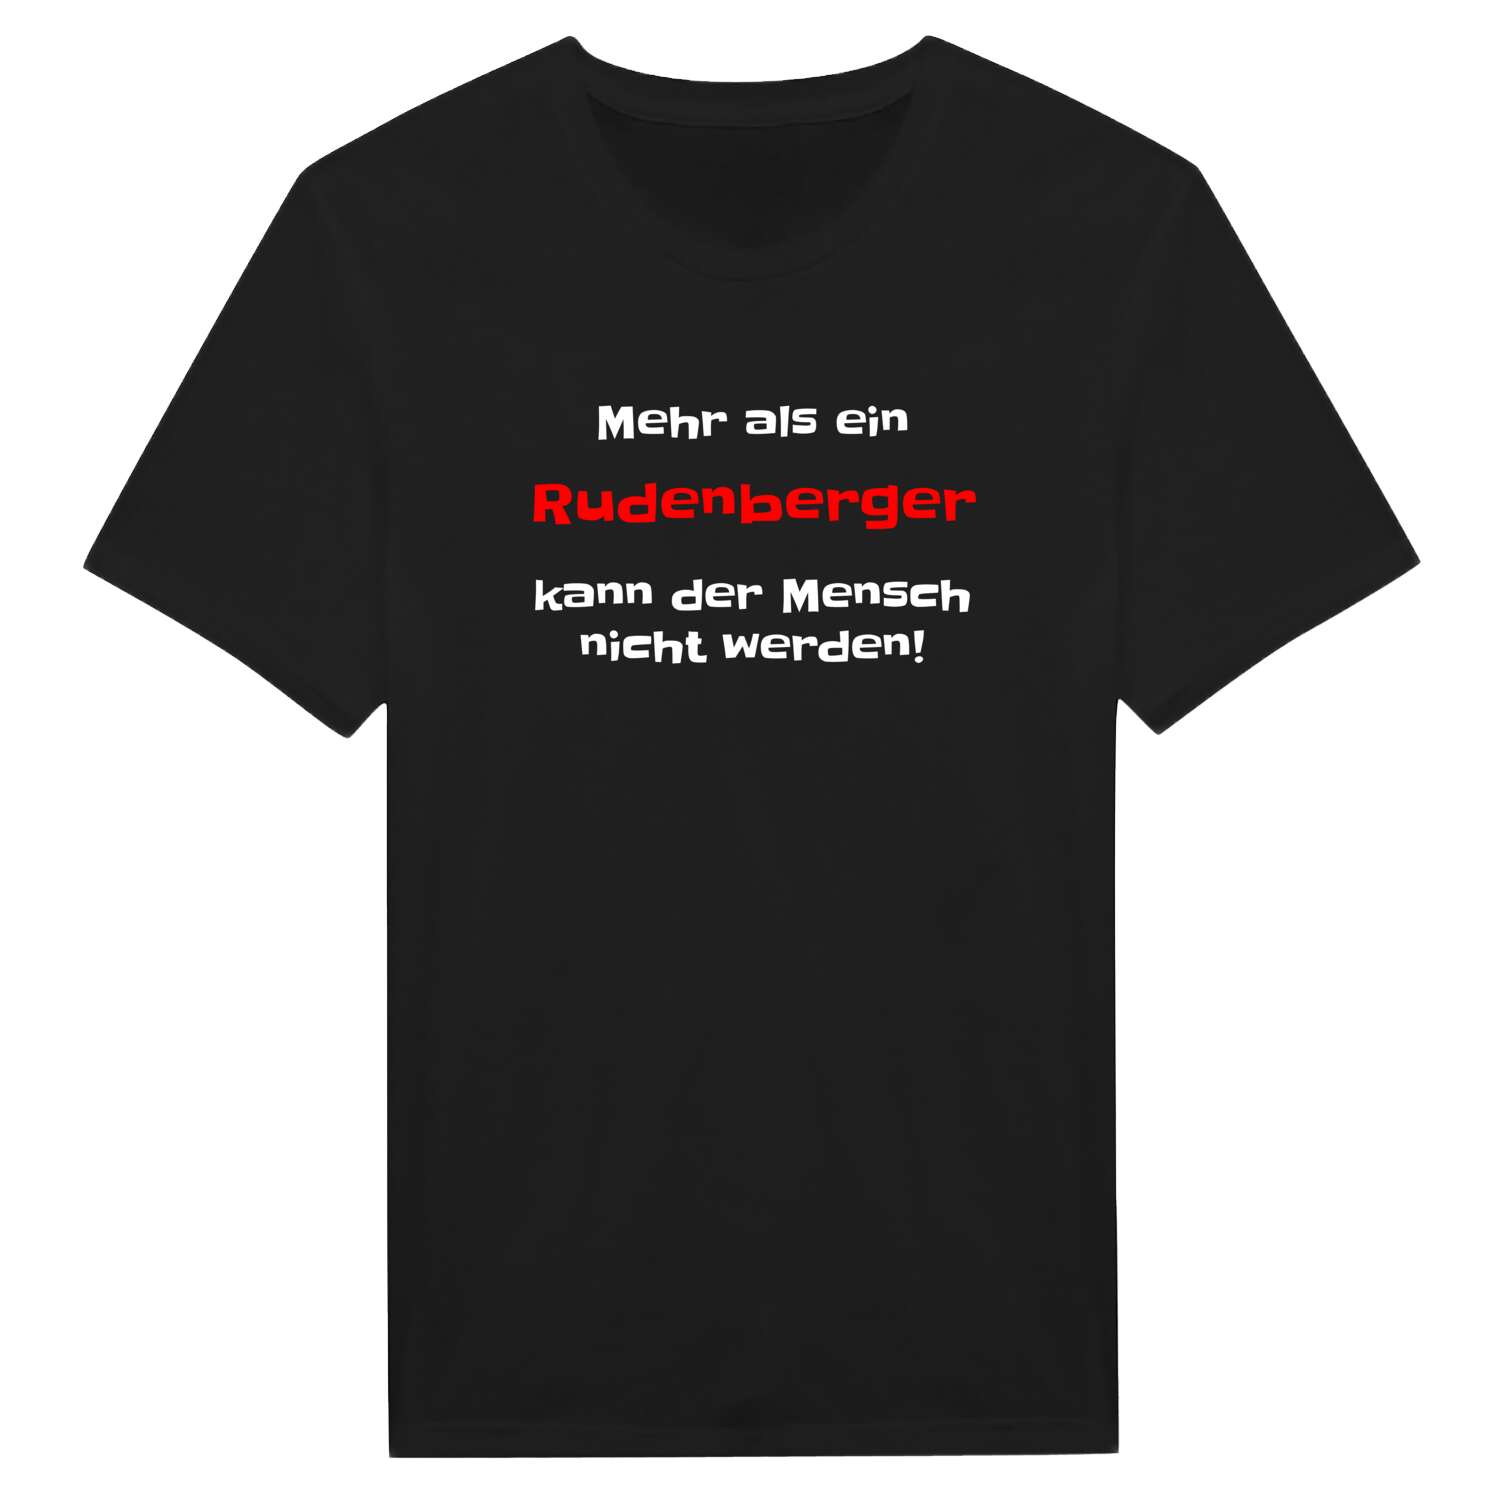 Rudenberg T-Shirt »Mehr als ein«